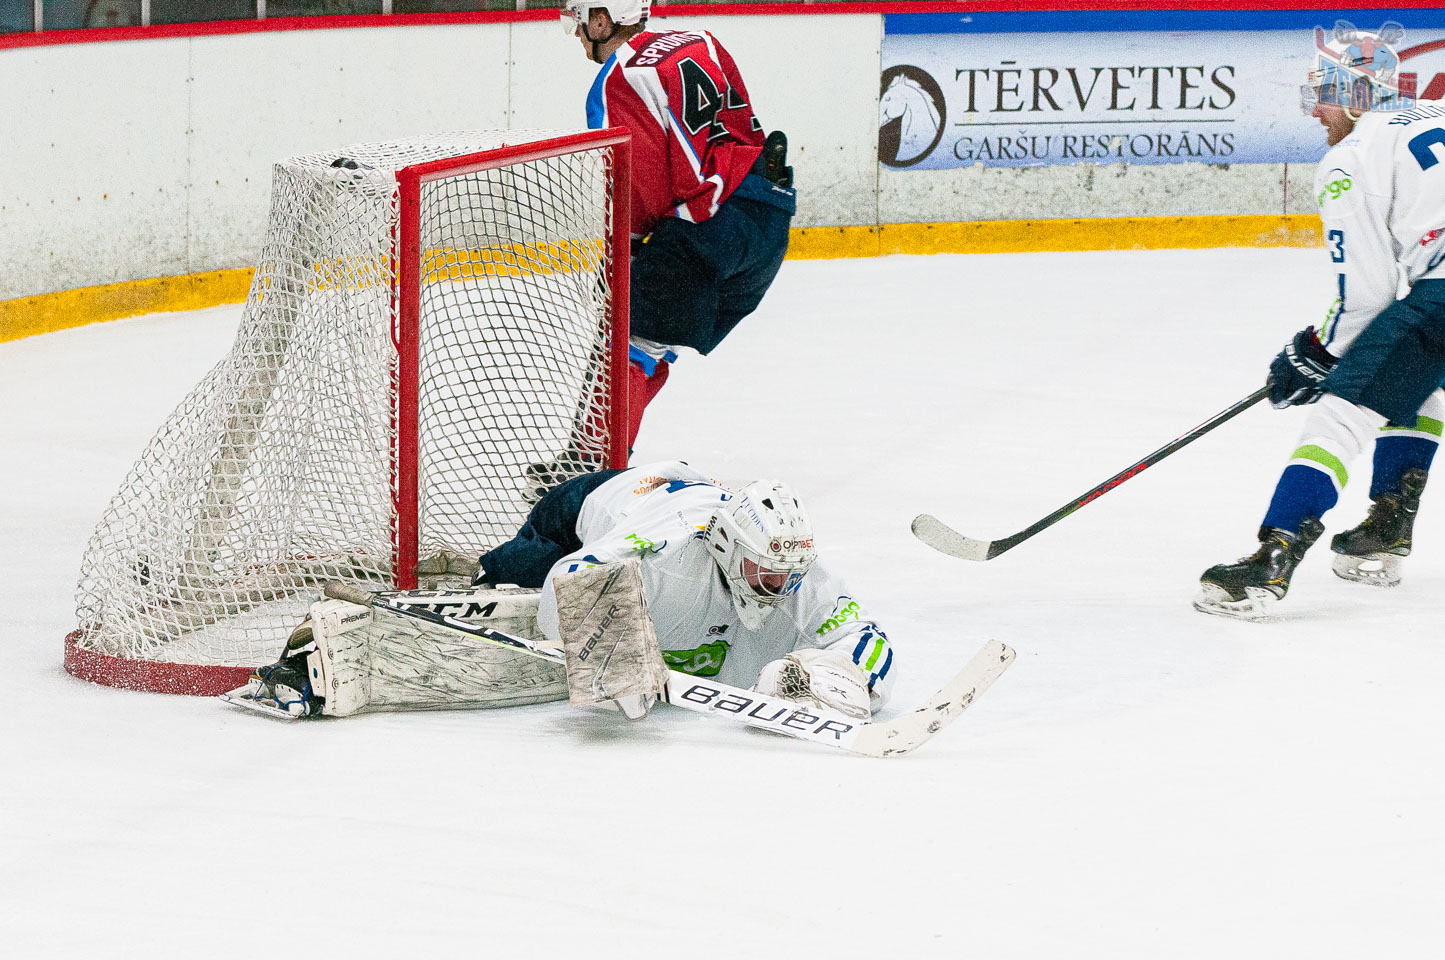 Optibet hokeja līgas regulārā čempionāta spēle starp HK “Zemgale/LLU” un HK “Mogo” Jelgavas ledus hallē 2020. gada 15. februārī | Foto: Ruslans Antropovs